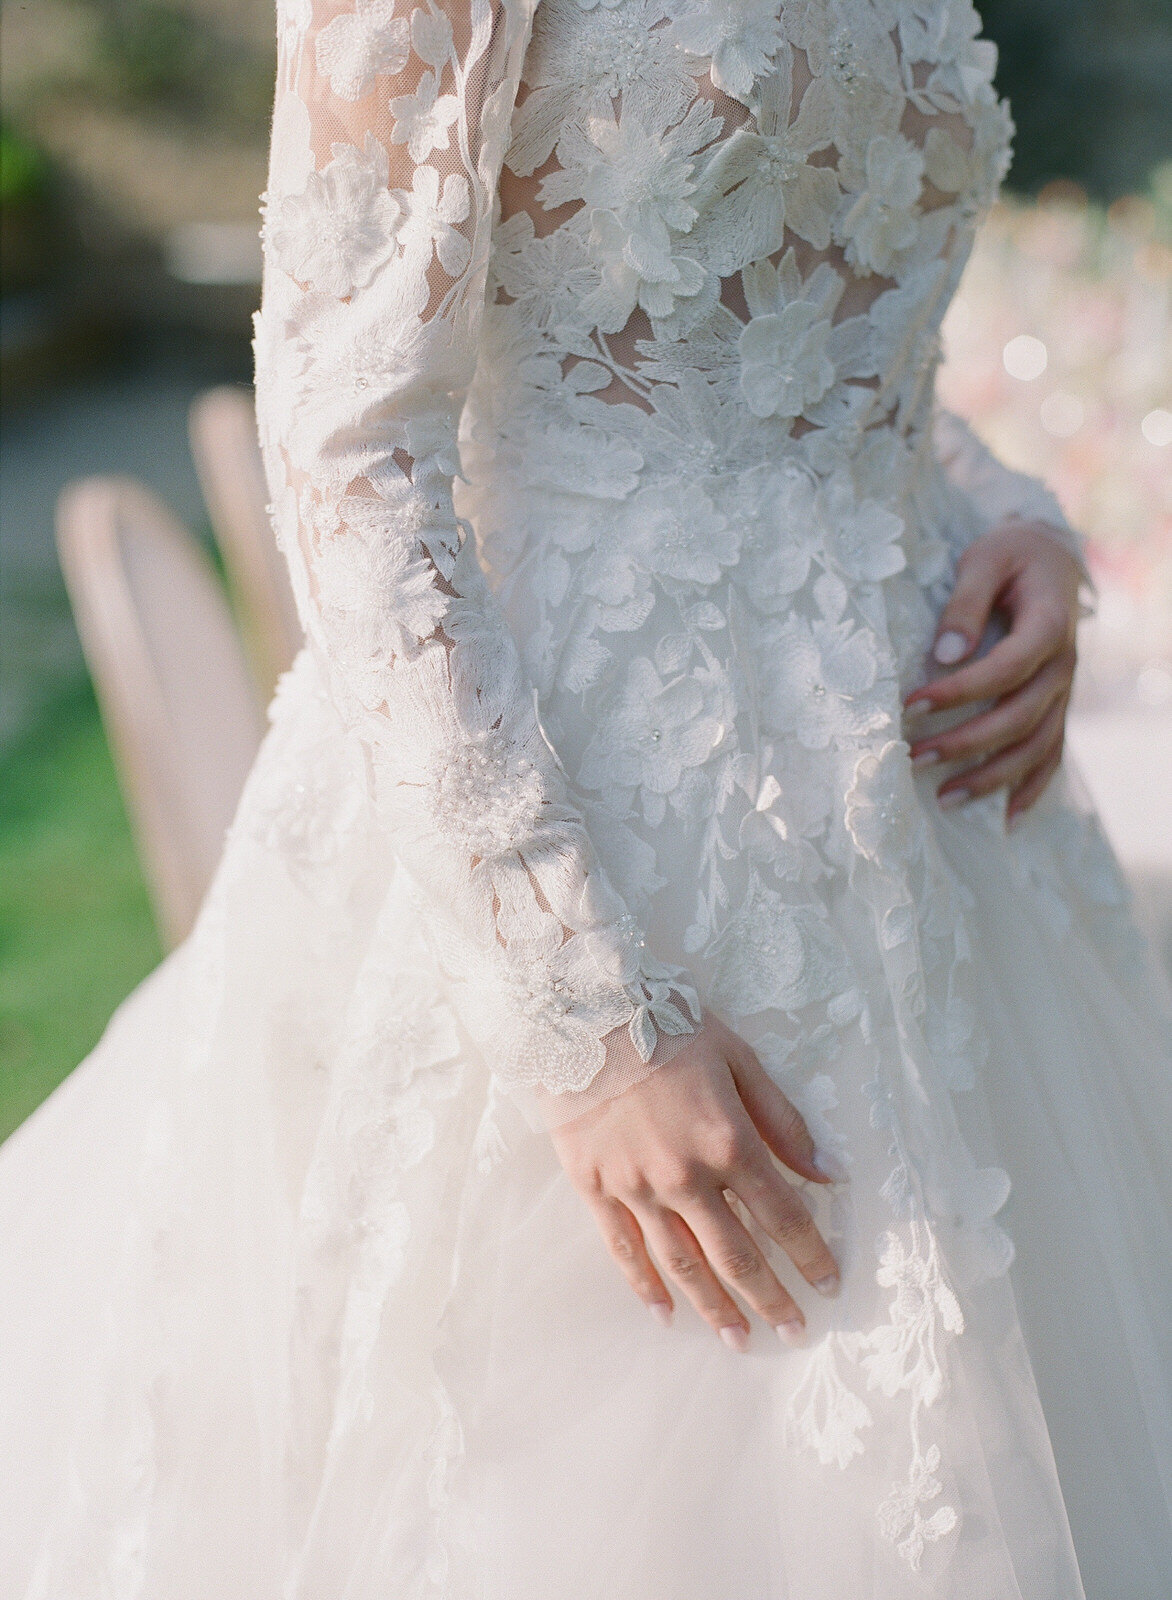 bridal gown details